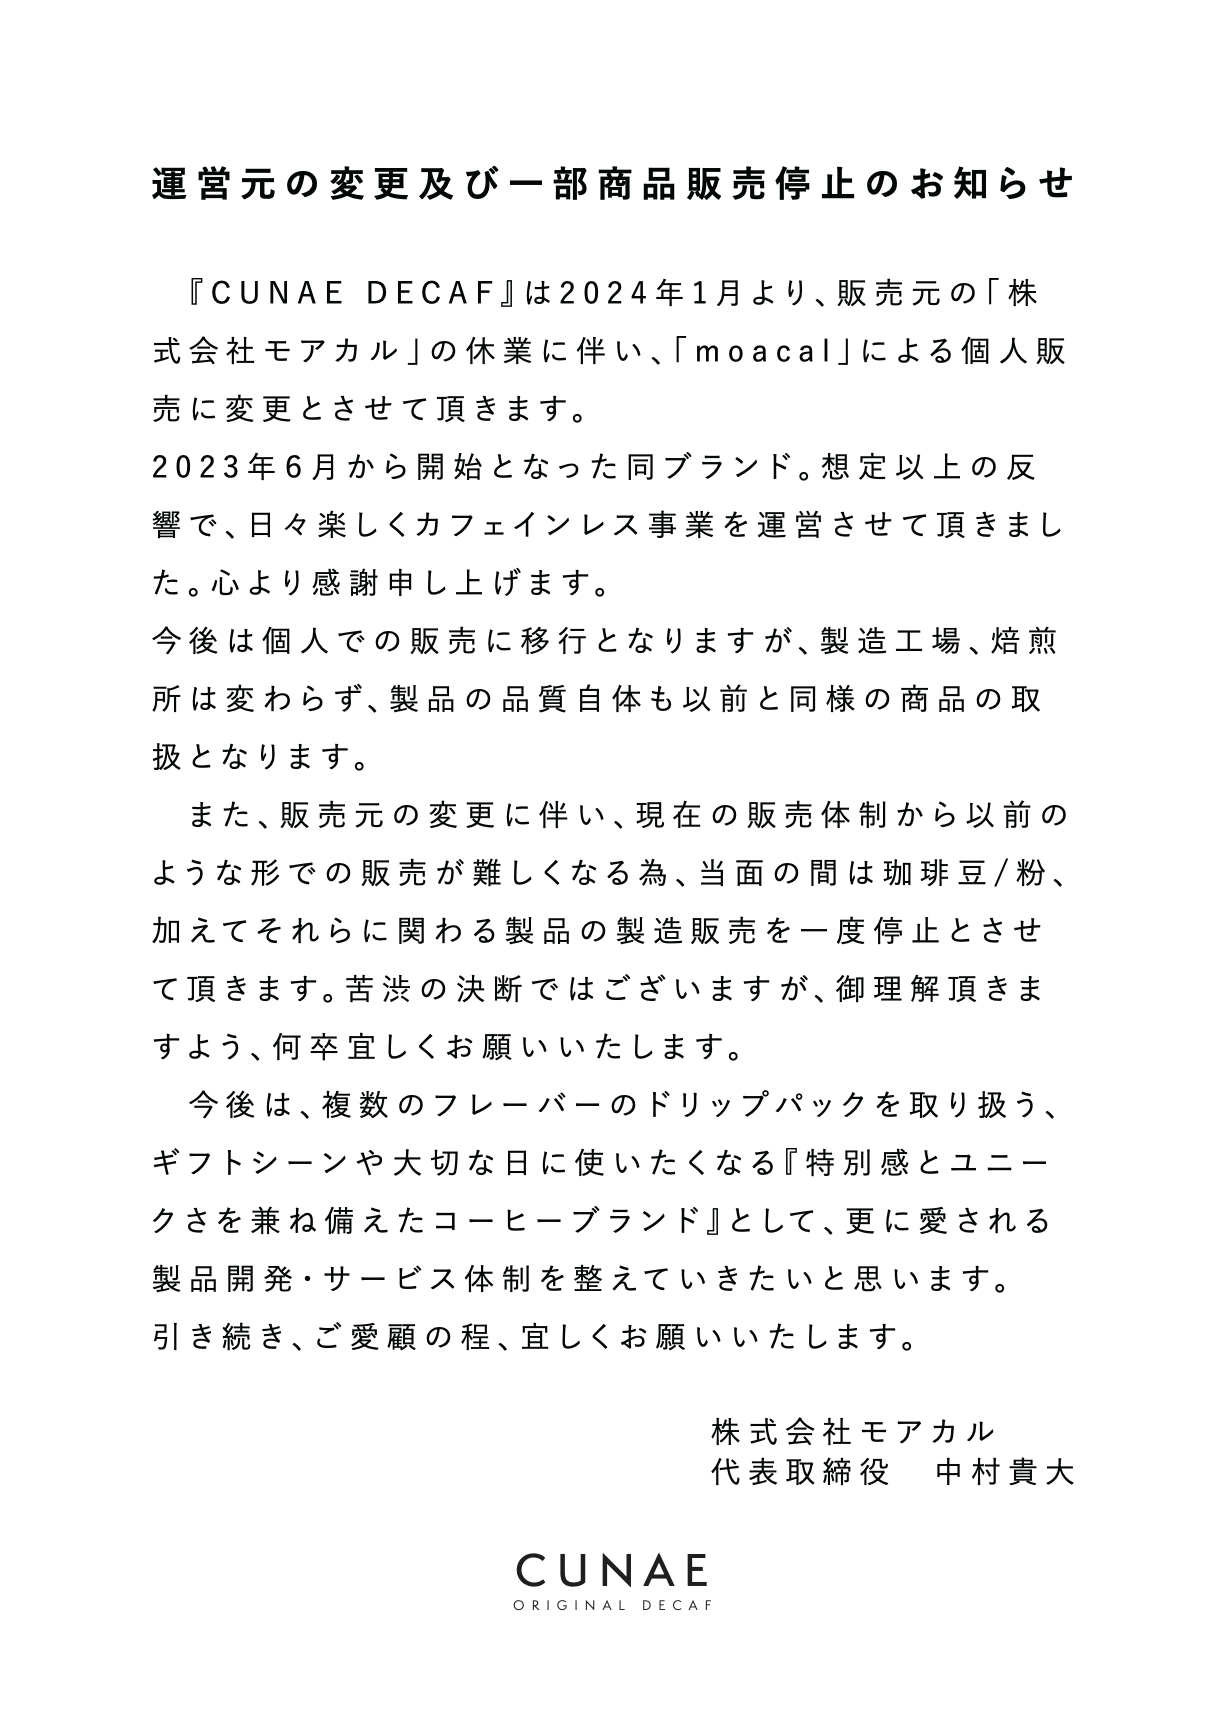 『CUNAE DECAF』運営元の変更及び一部商品販売停止のお知らせ